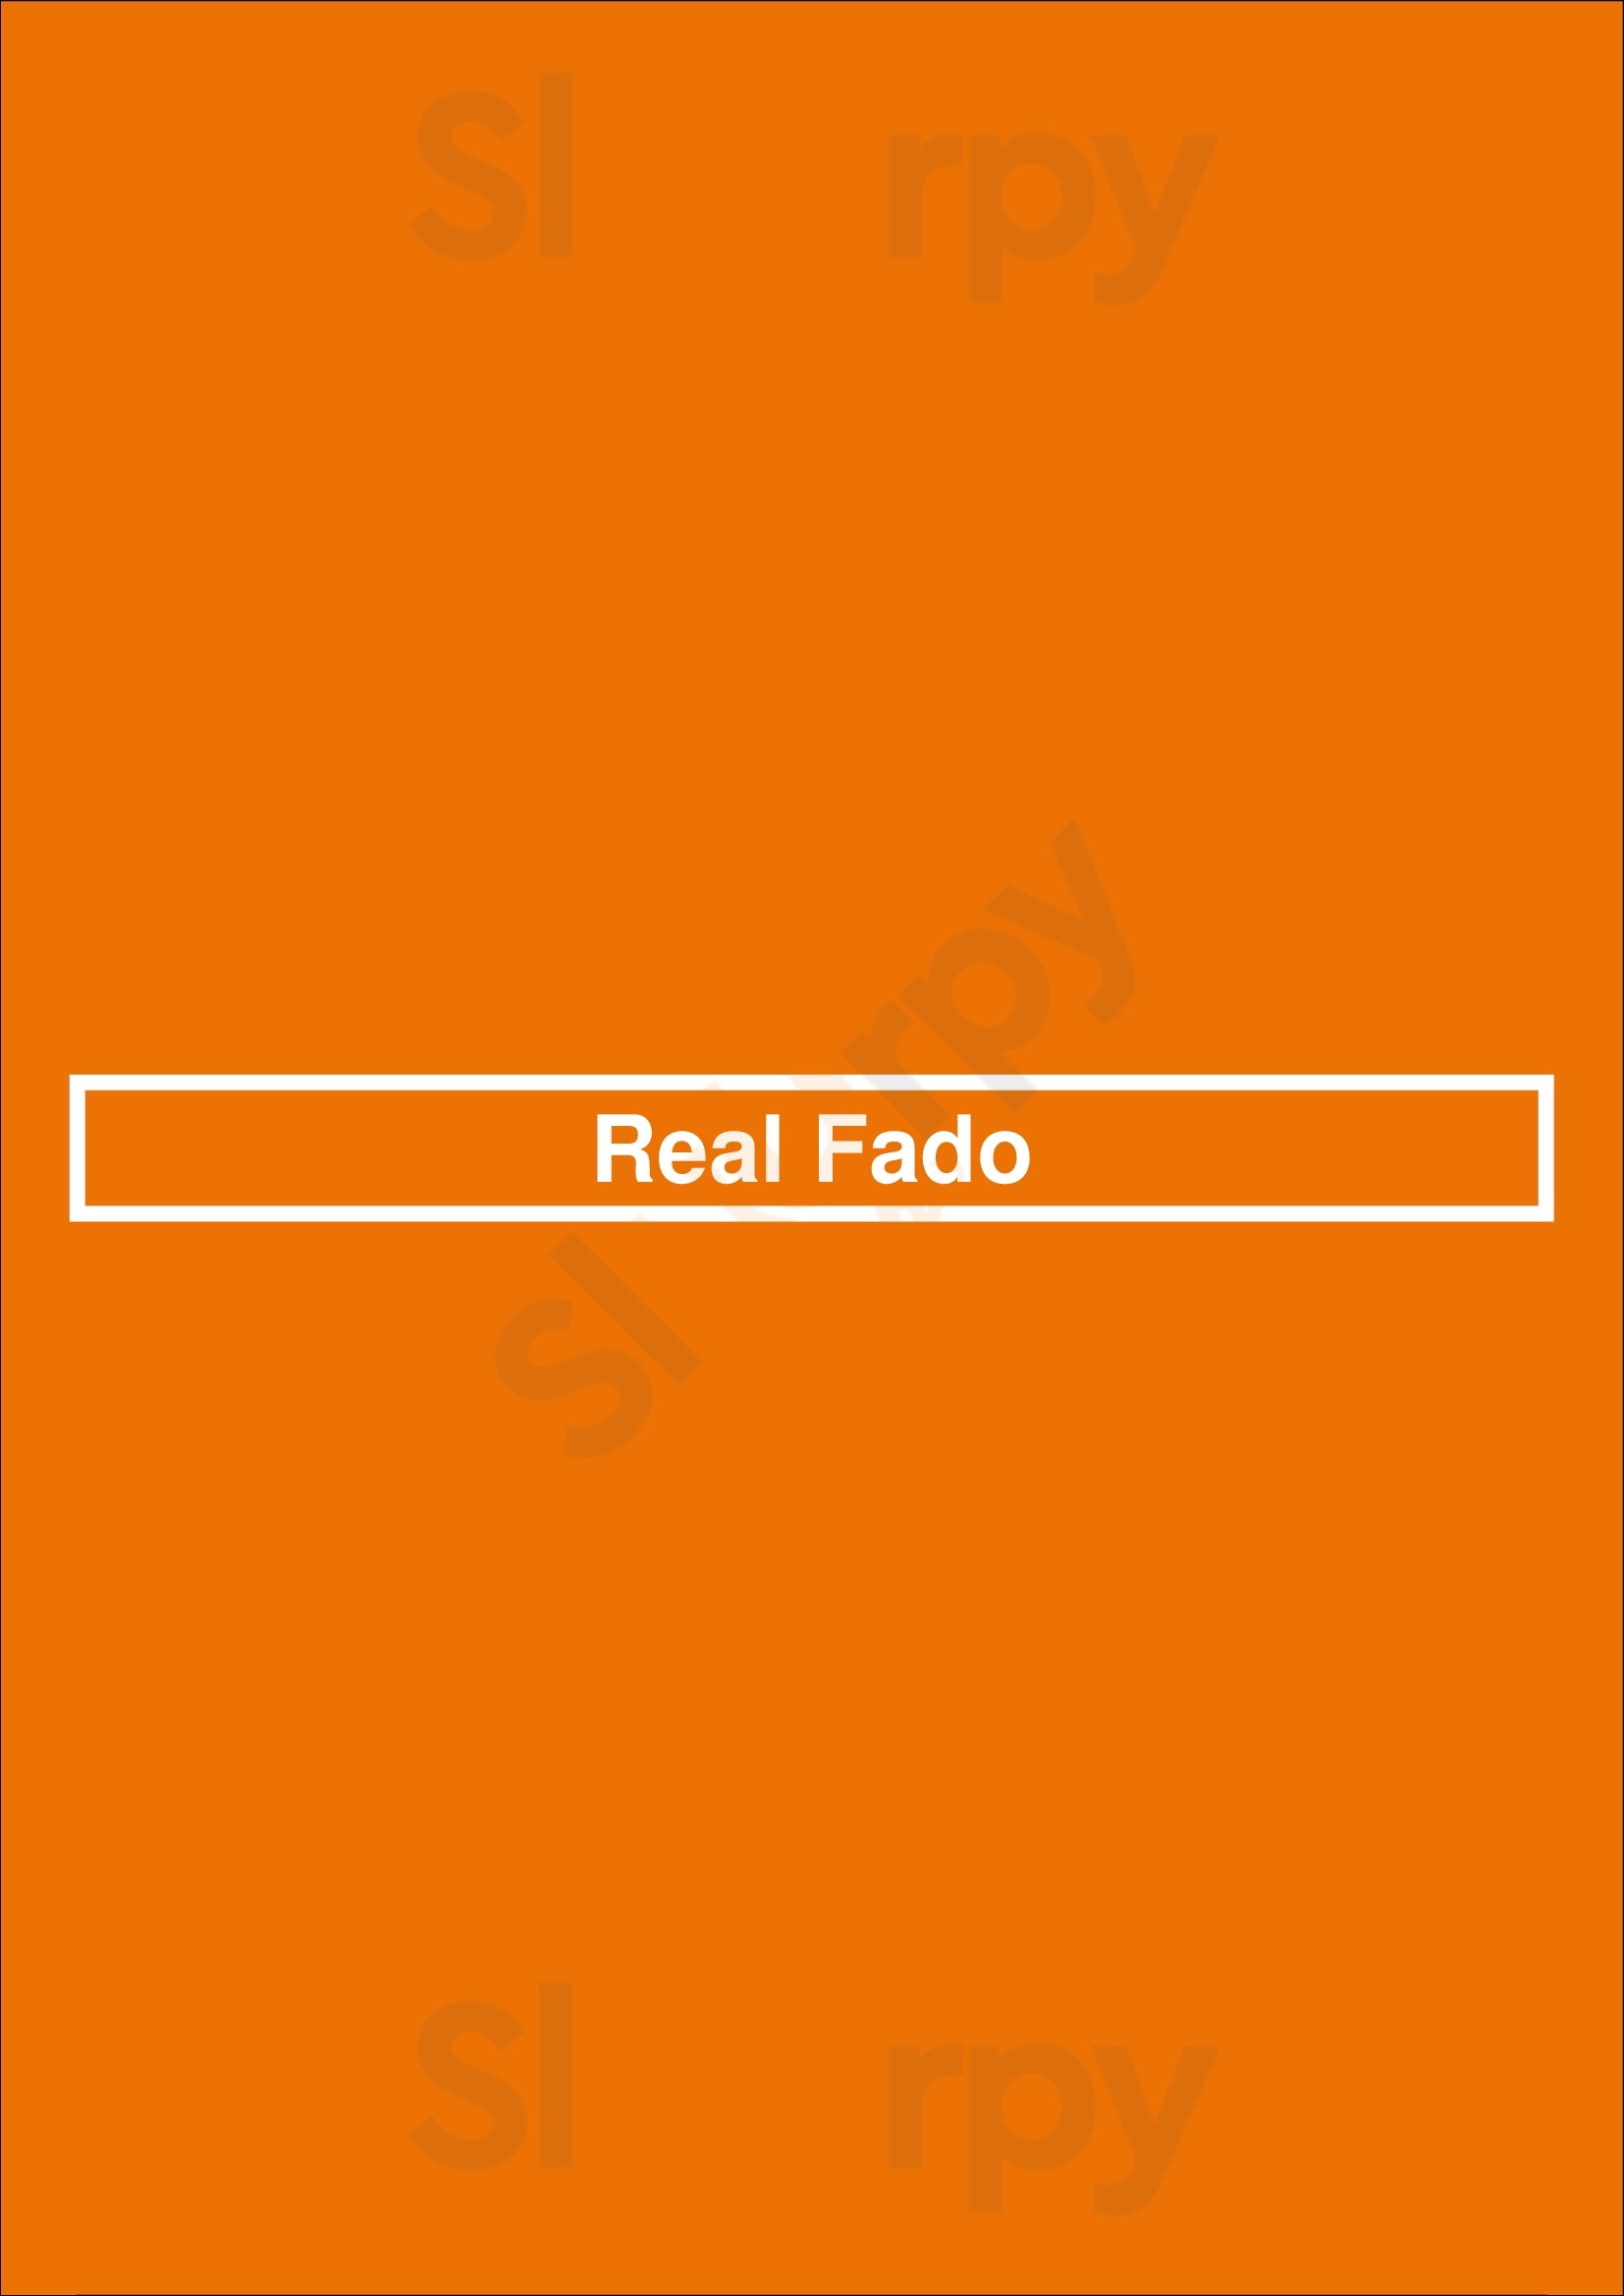 Real Fado Lisboa Menu - 1